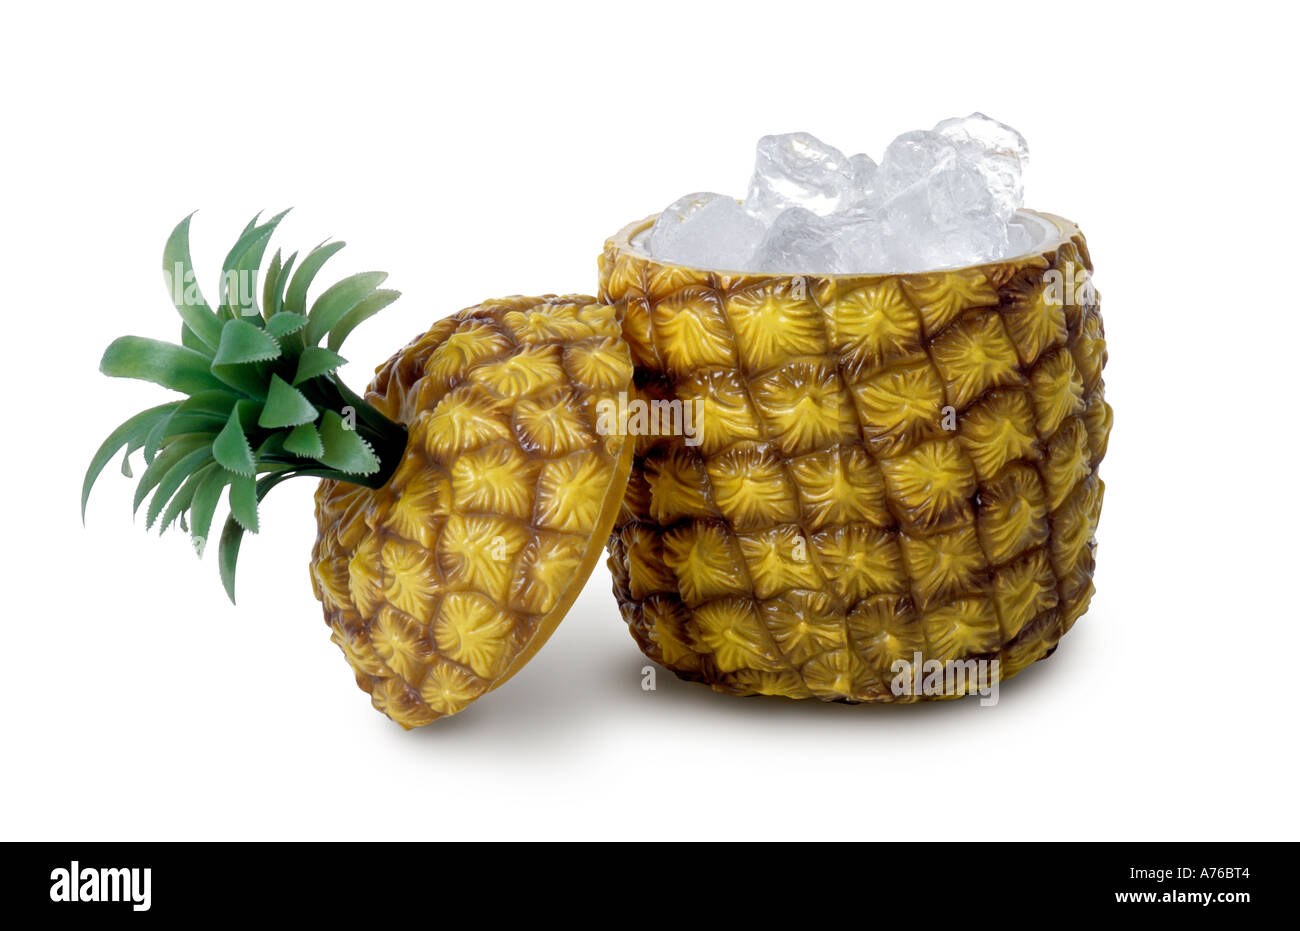 Seau à glace ananas en plastique sur un fond blanc, pur. Banque D'Images